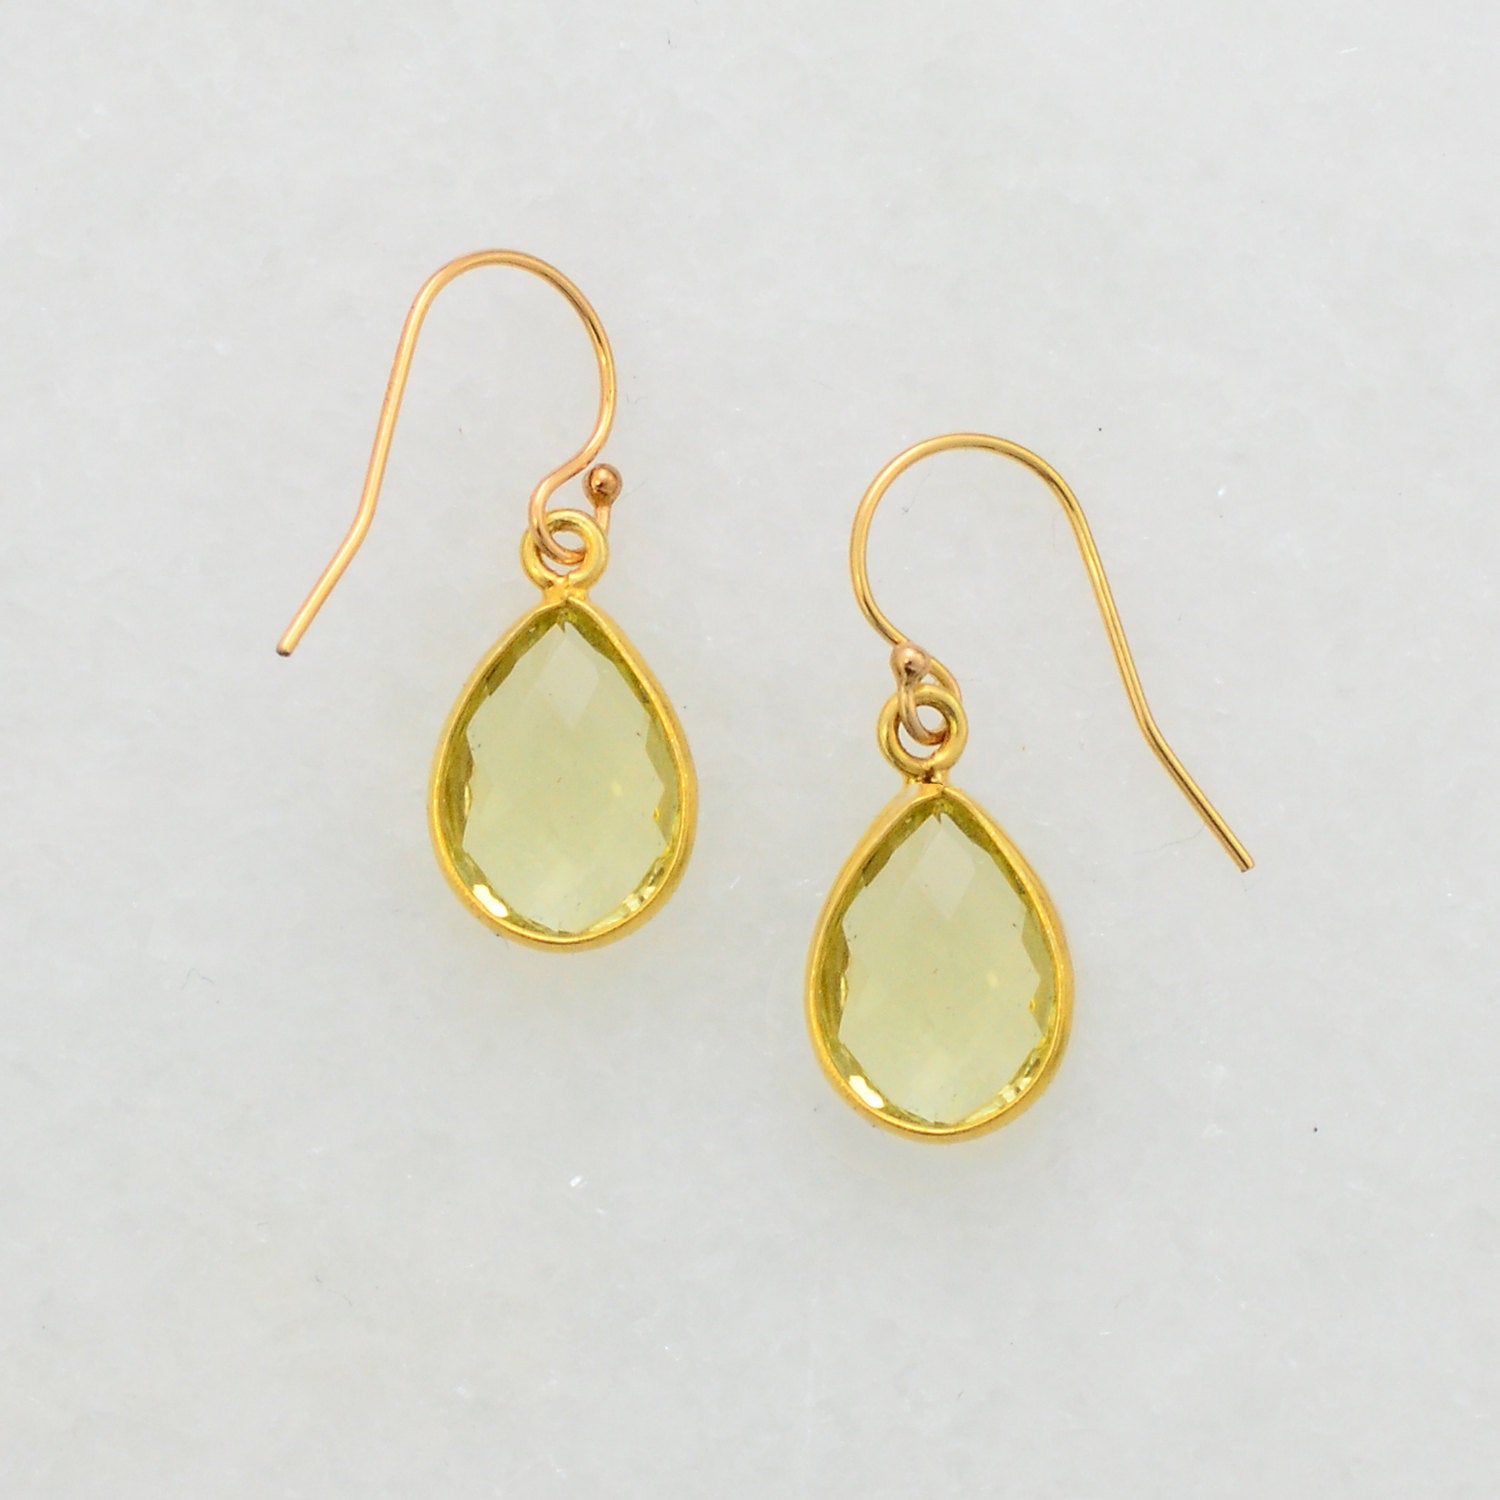 Lemon Quartz Earring - Minimalist Earring - Gold Quartz Earring - Ear Hook - Small Cute Earring - Dangle and Drop Earring - Everyday Earring